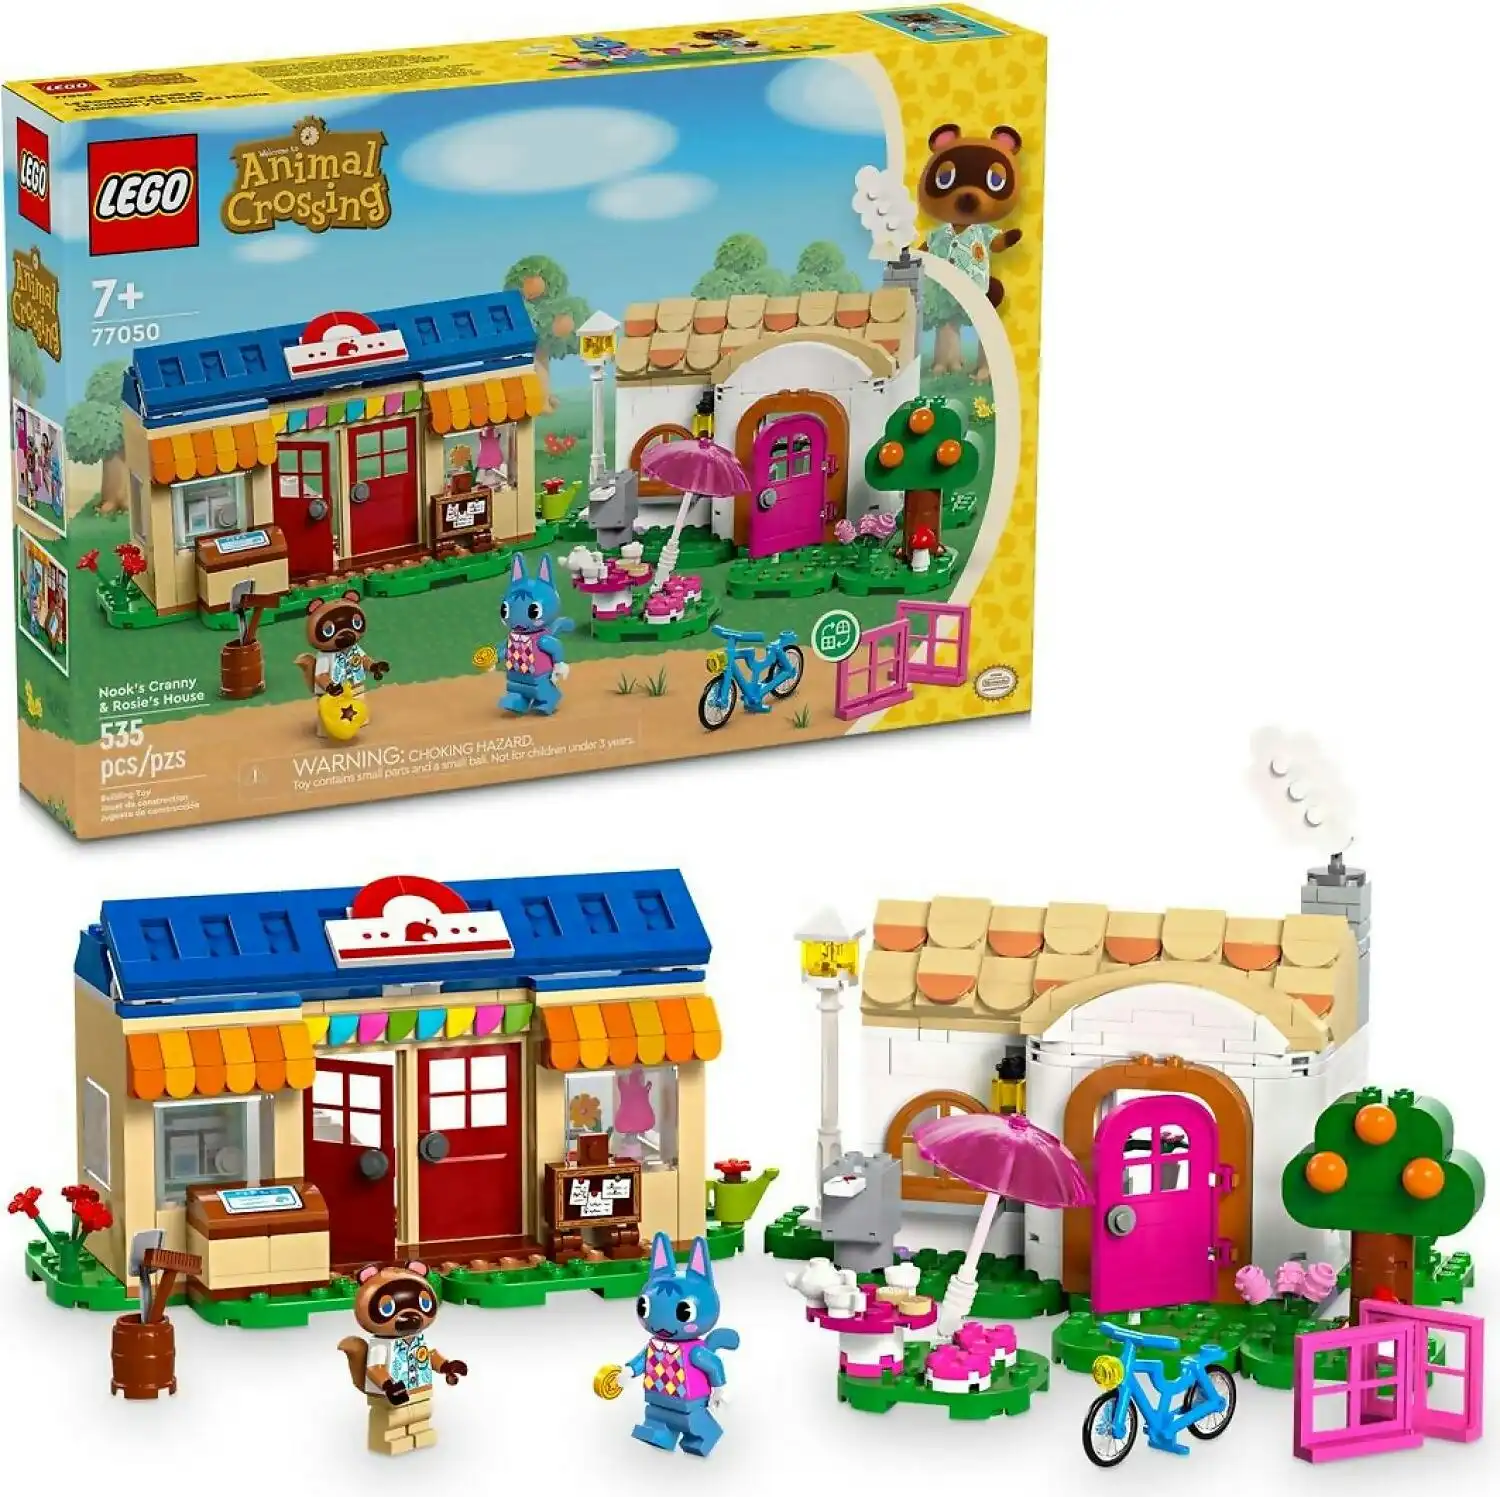 LEGO 77050 Nook's Cranny & Rosie's House - Animal Crossing